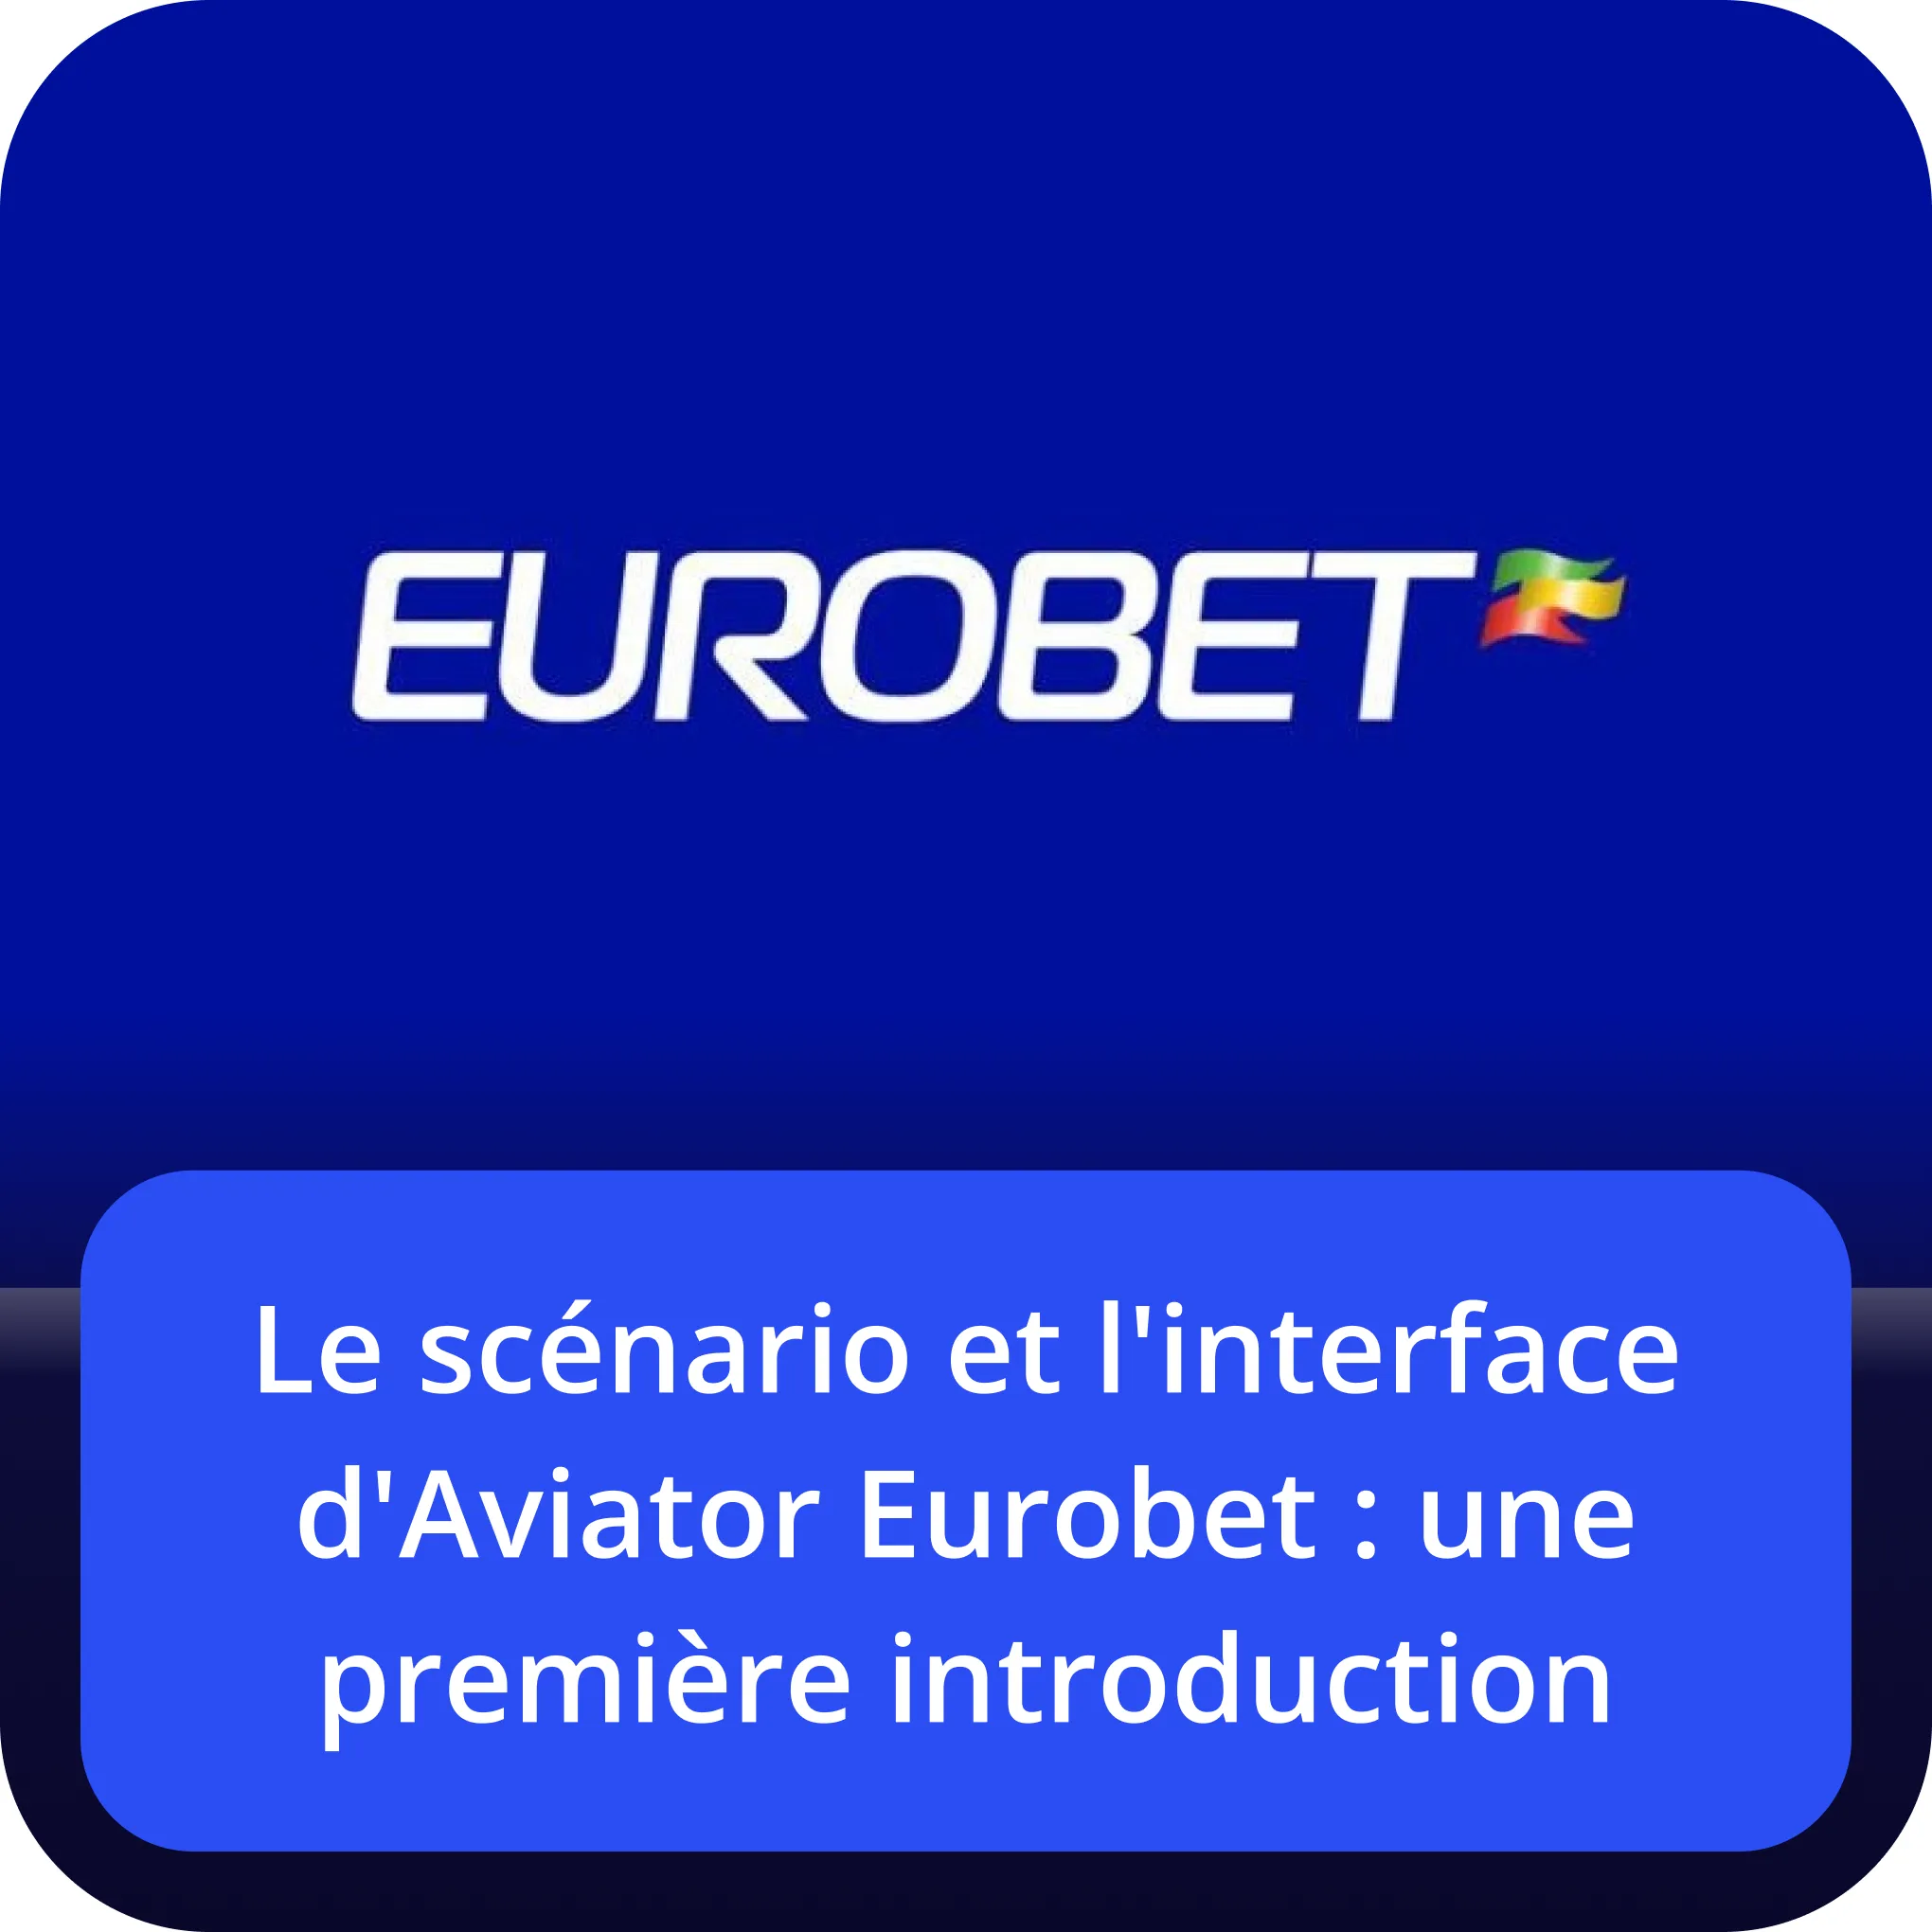 eurobet aviator le scénario